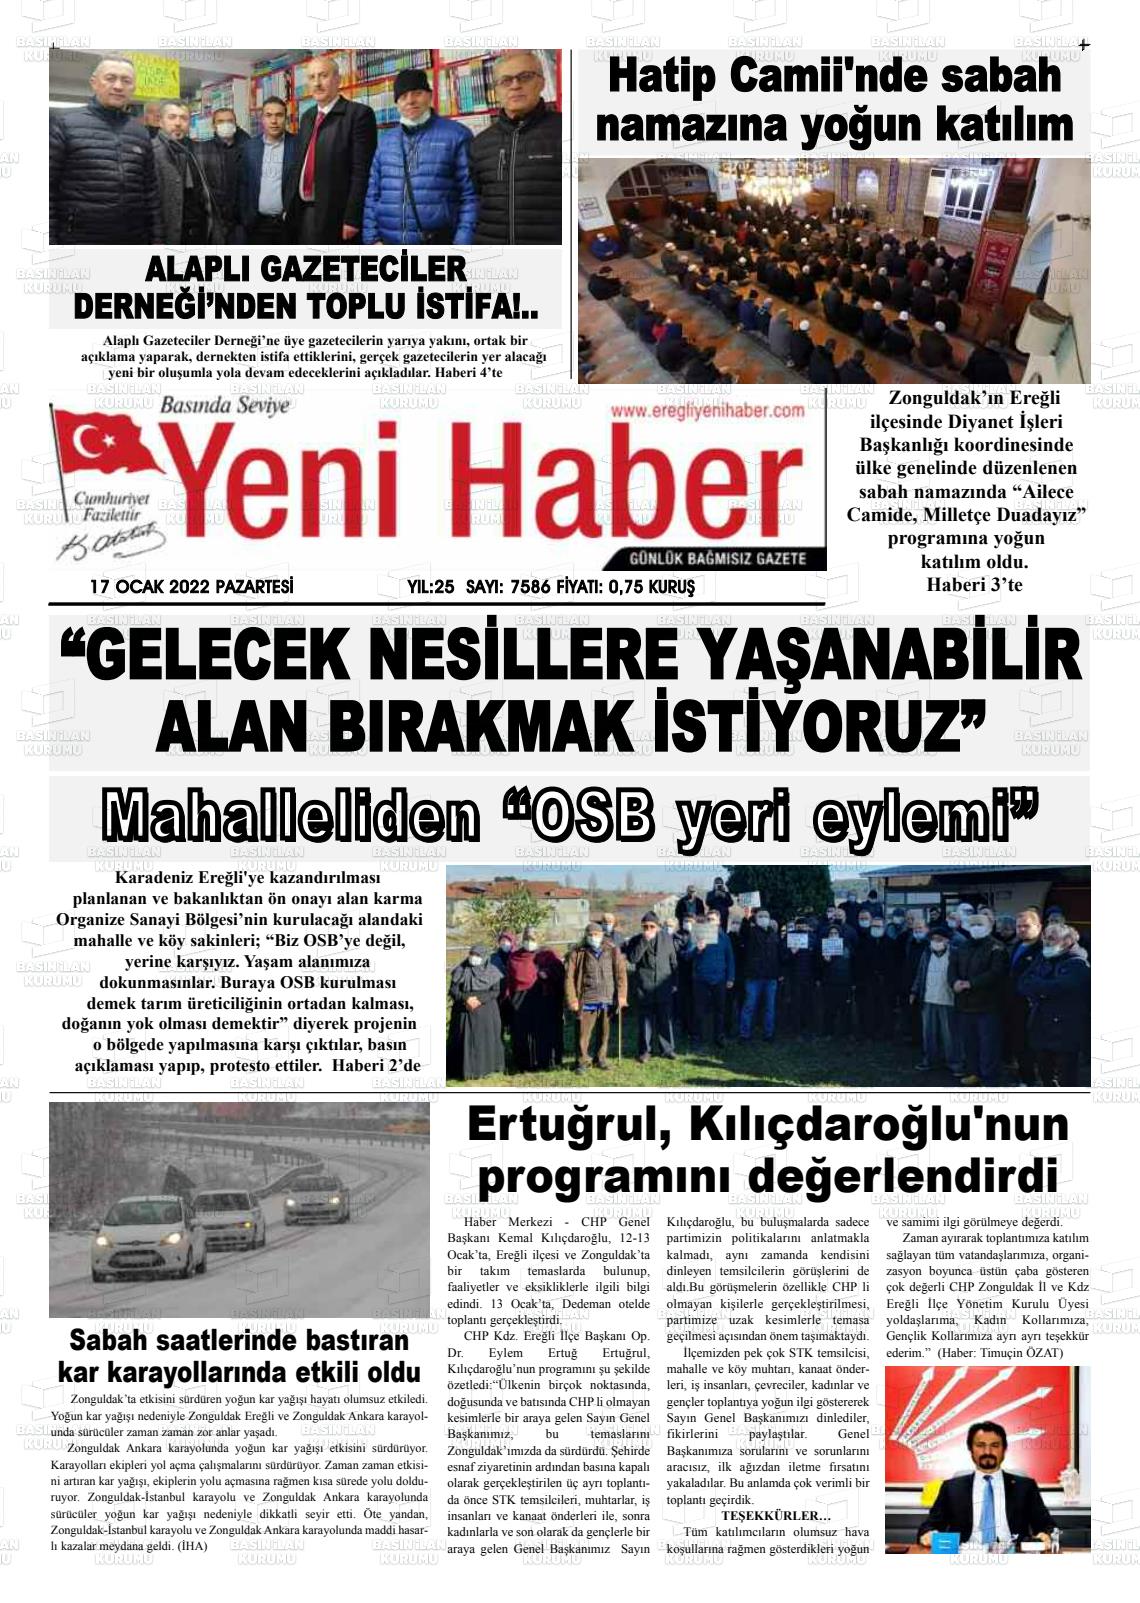 17 Ocak 2022 Ereğli Yeni Haber Gazete Manşeti